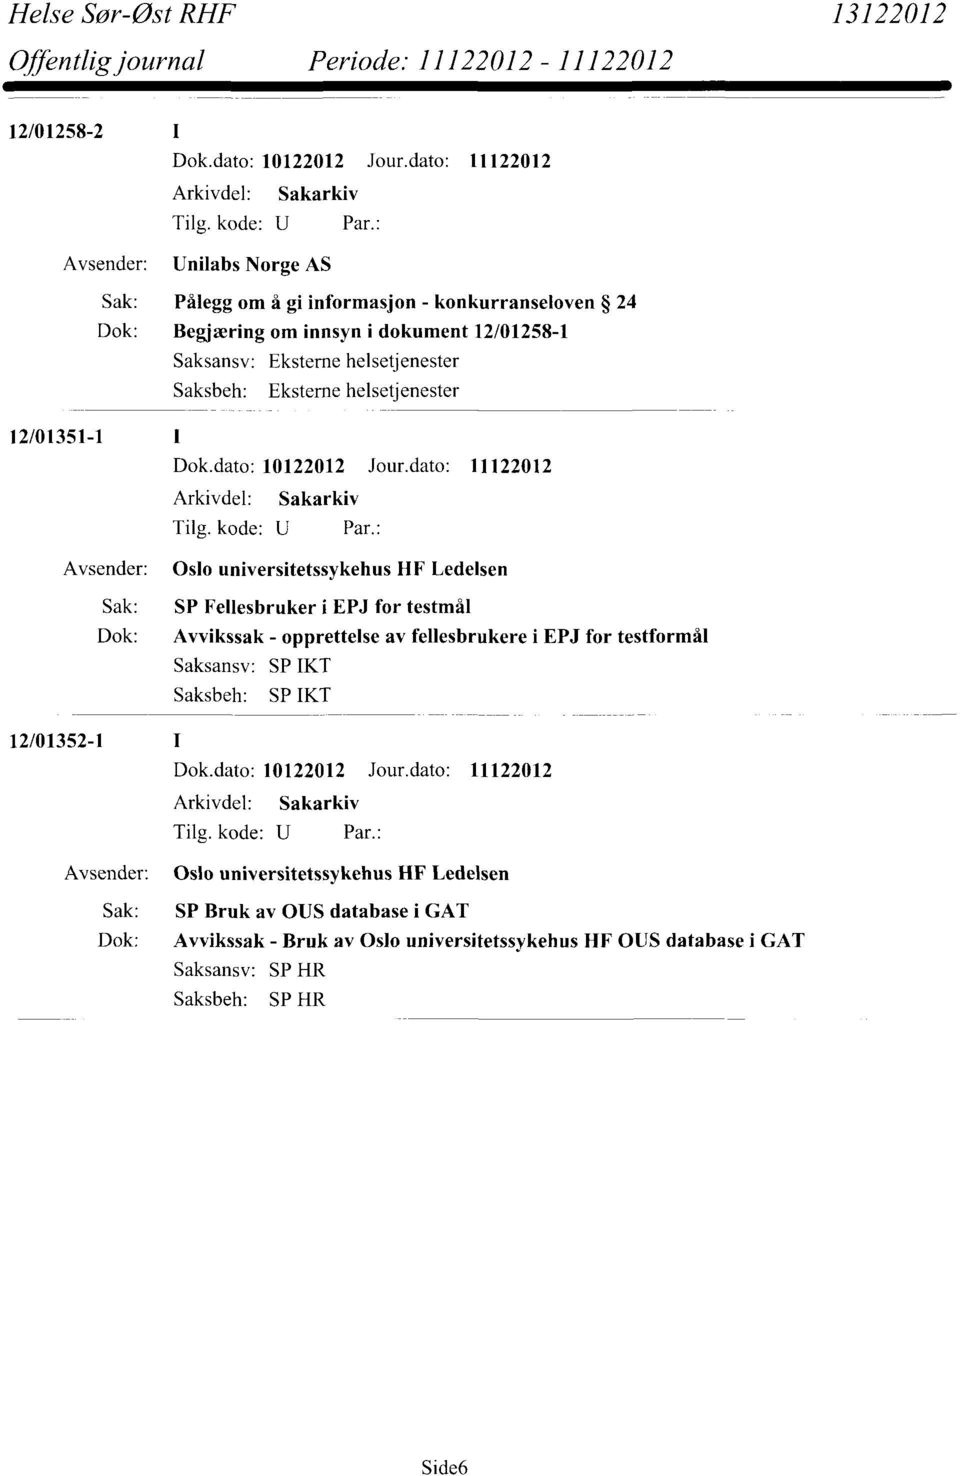 Fellesbruker i EPJ for testmål Dok: Avvikssak - opprettelse av fellesbrukere i EPJ for testformål Saksansv: SP IKT SP IKT 12/01352-1 Oslo